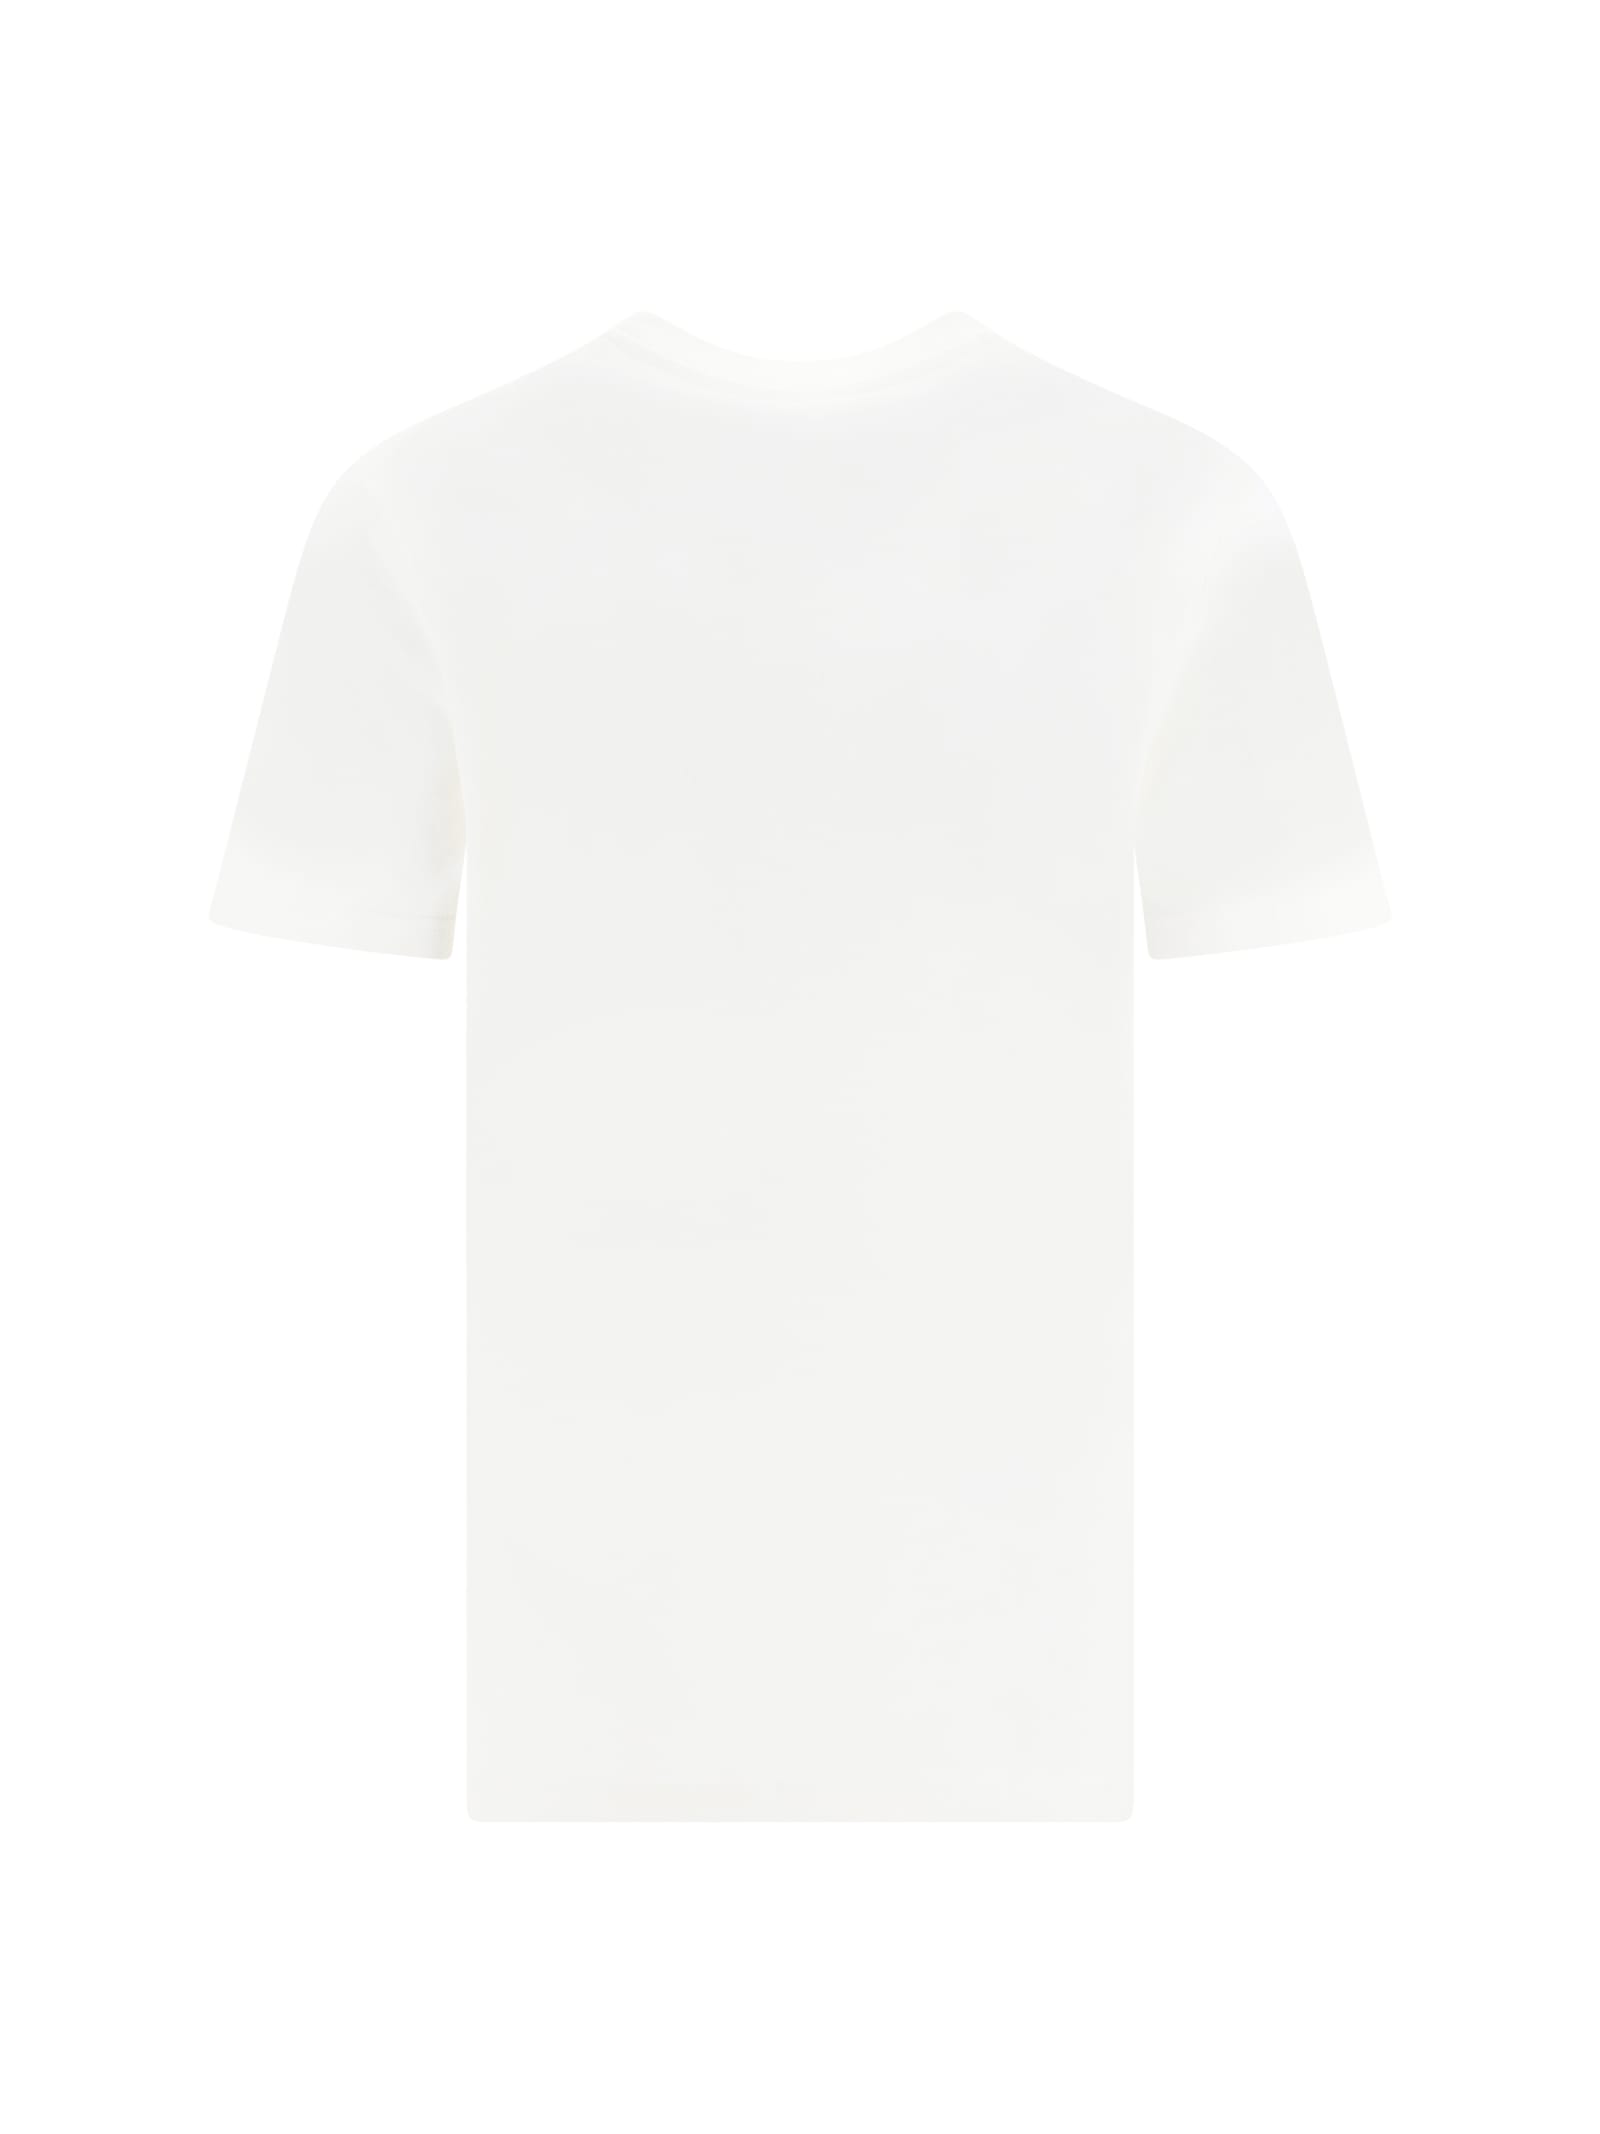 Shop Jil Sander T-shirt In Natural